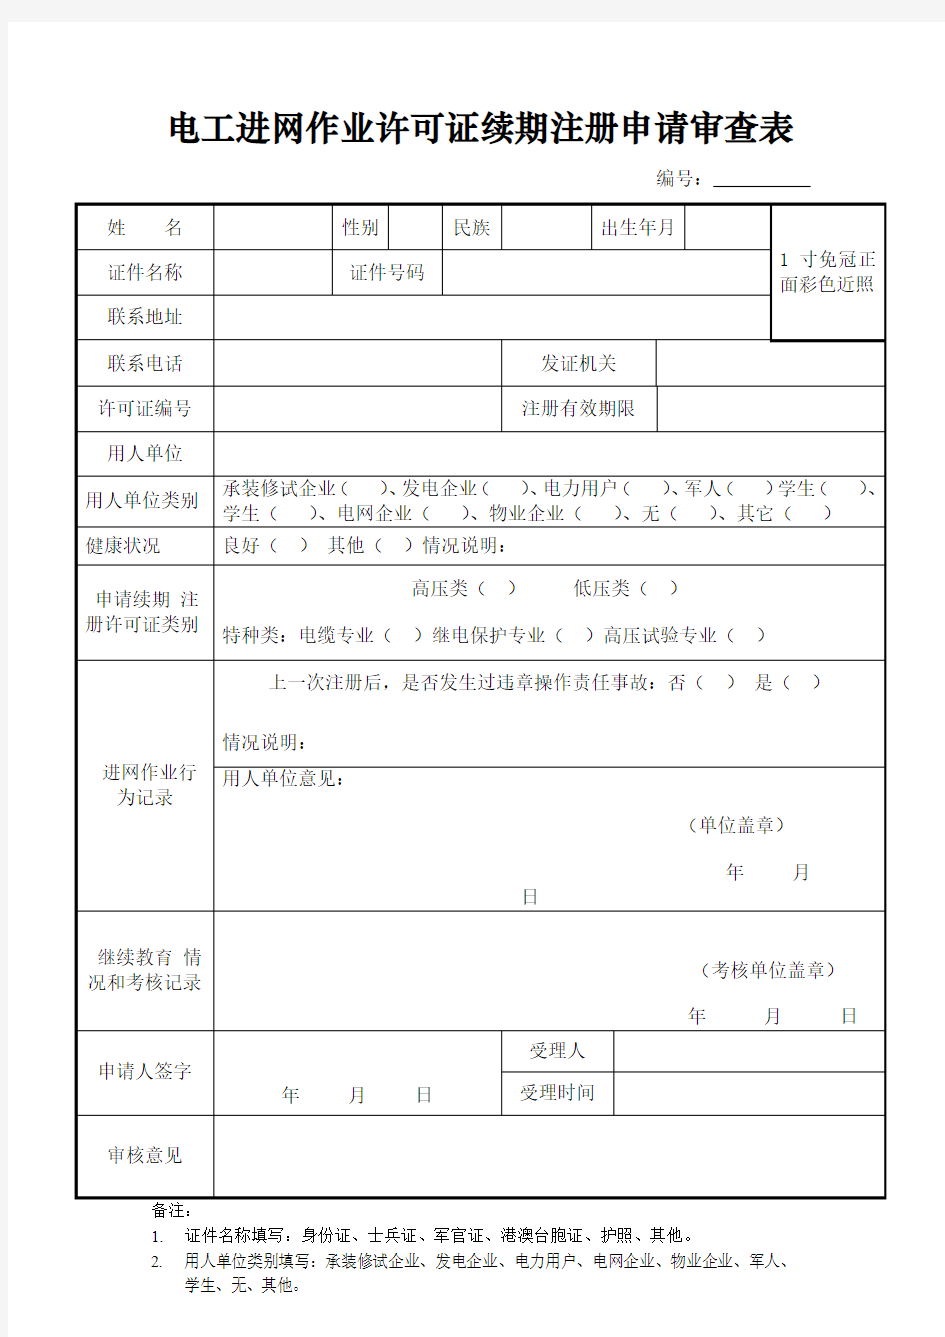 新版电工进网作业许可证续期注册申请审查表(复审)